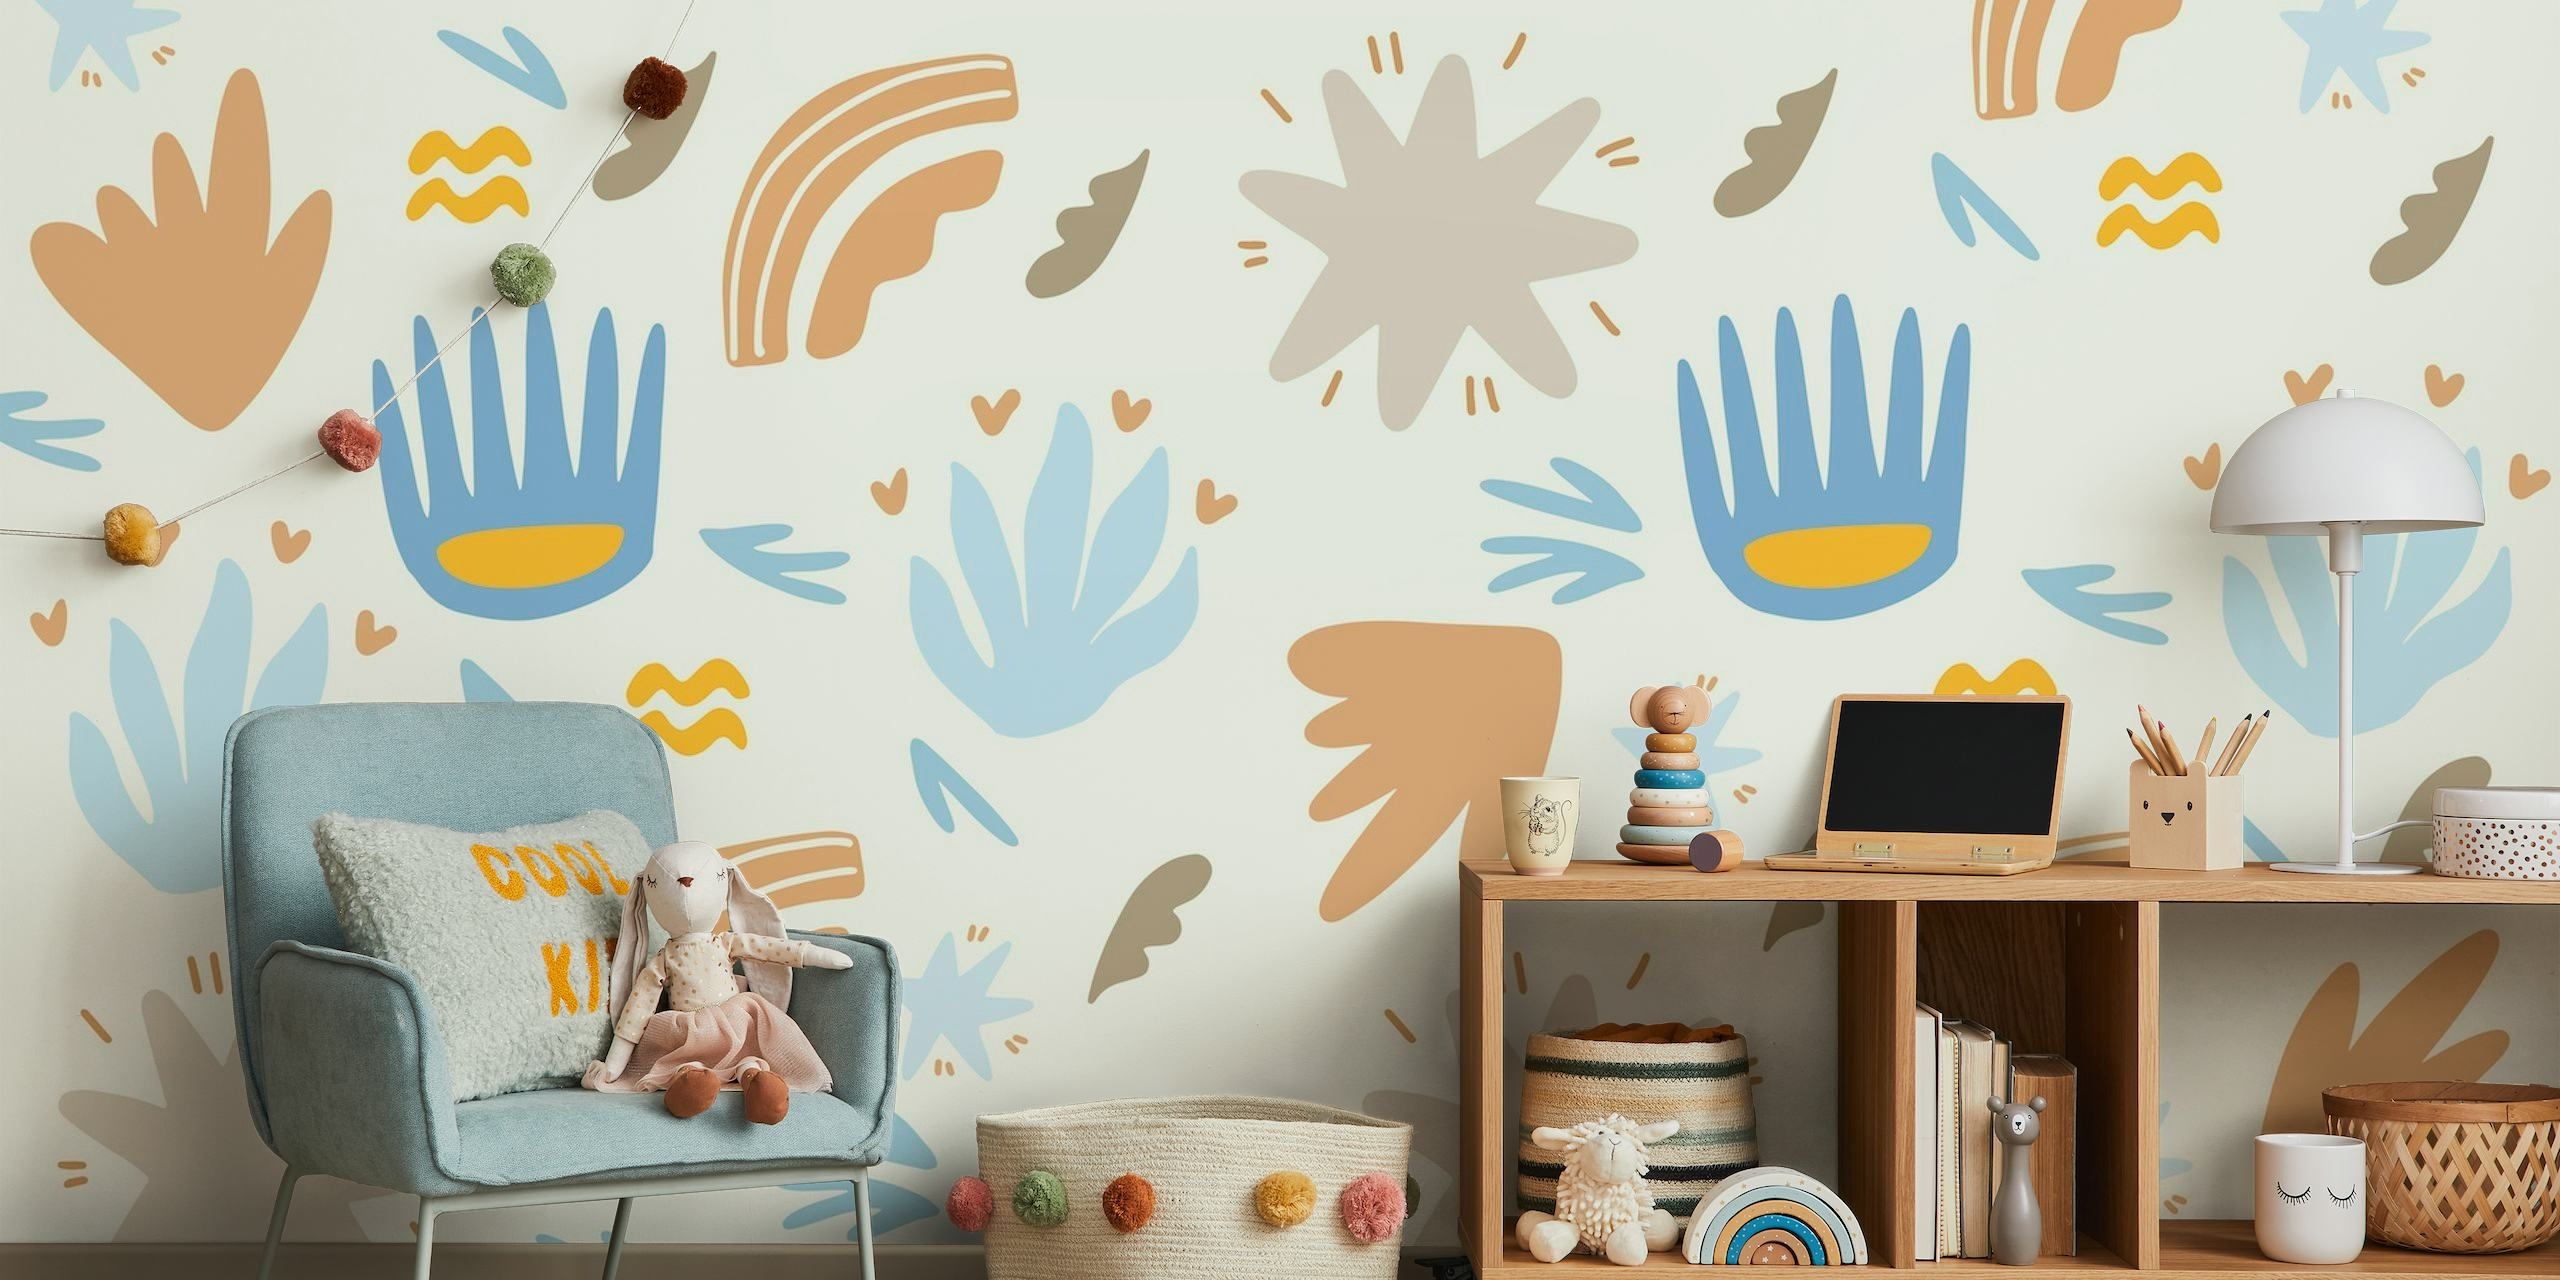 Mural de parede infantil com tema de verão, formas abstratas e motivos caprichosos em azul, ocre e terracota